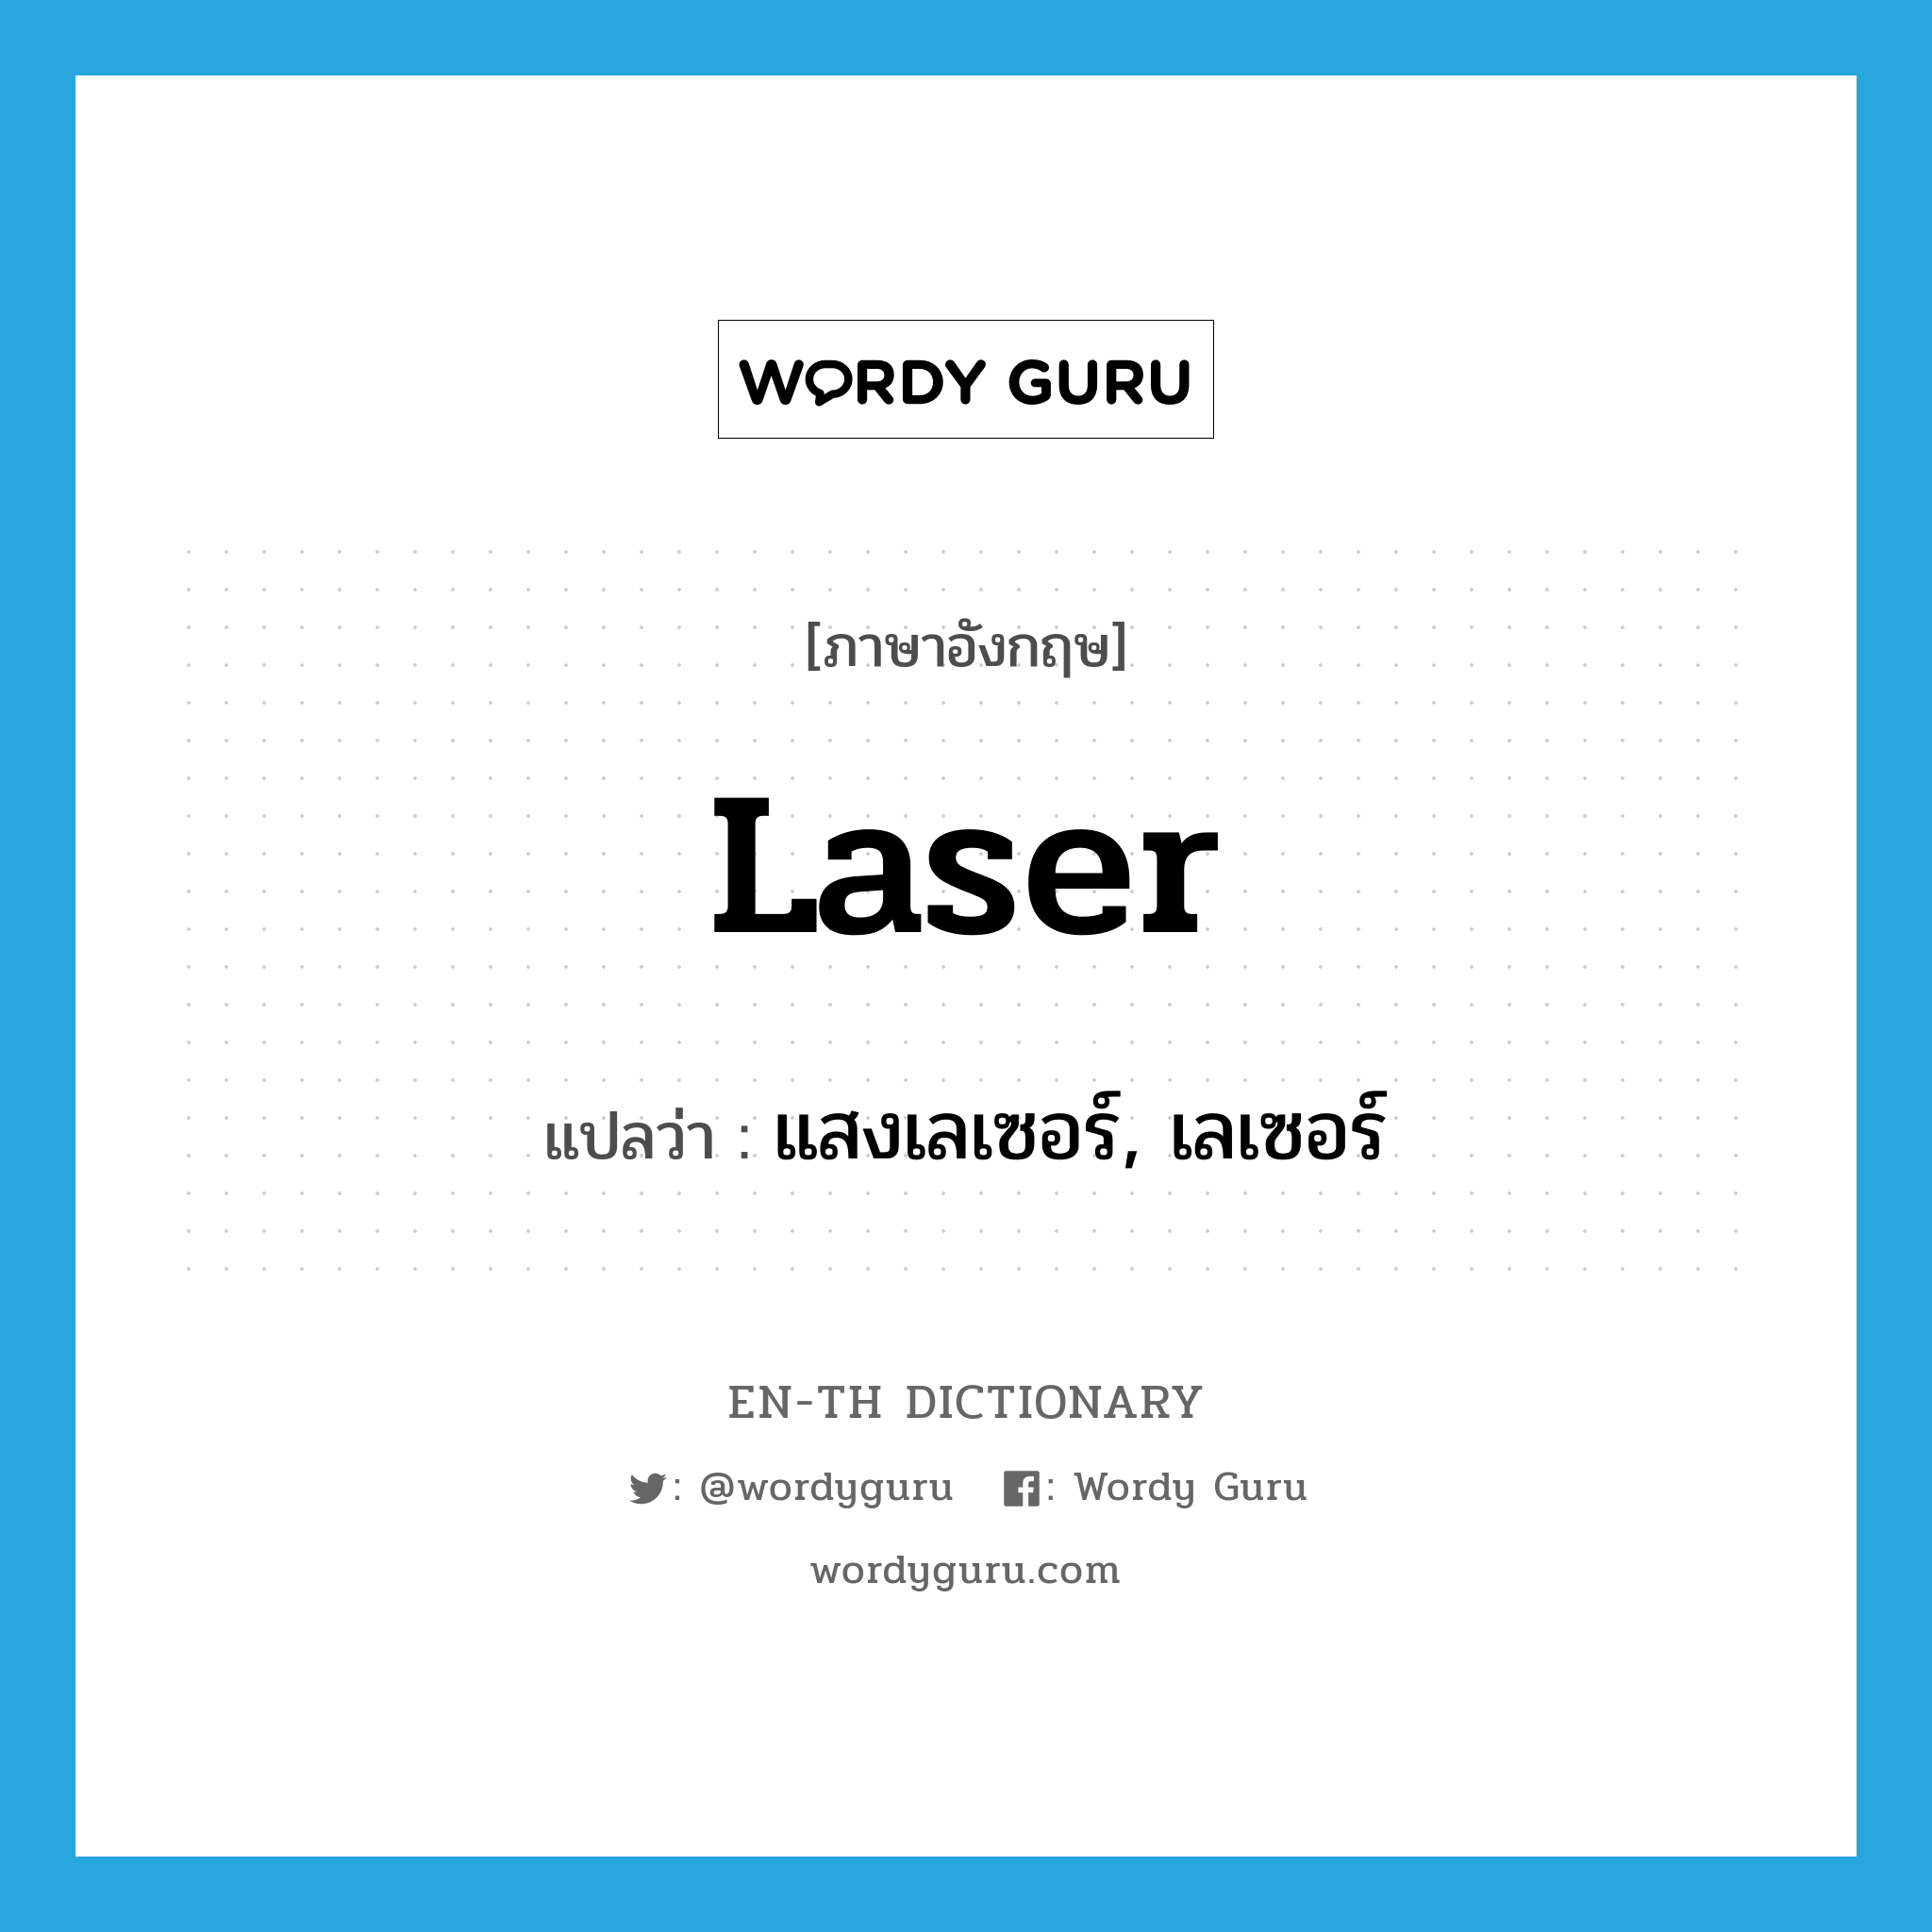 แสงเลเซอร์, เลเซอร์ ภาษาอังกฤษ?, คำศัพท์ภาษาอังกฤษ แสงเลเซอร์, เลเซอร์ แปลว่า laser ประเภท N หมวด N